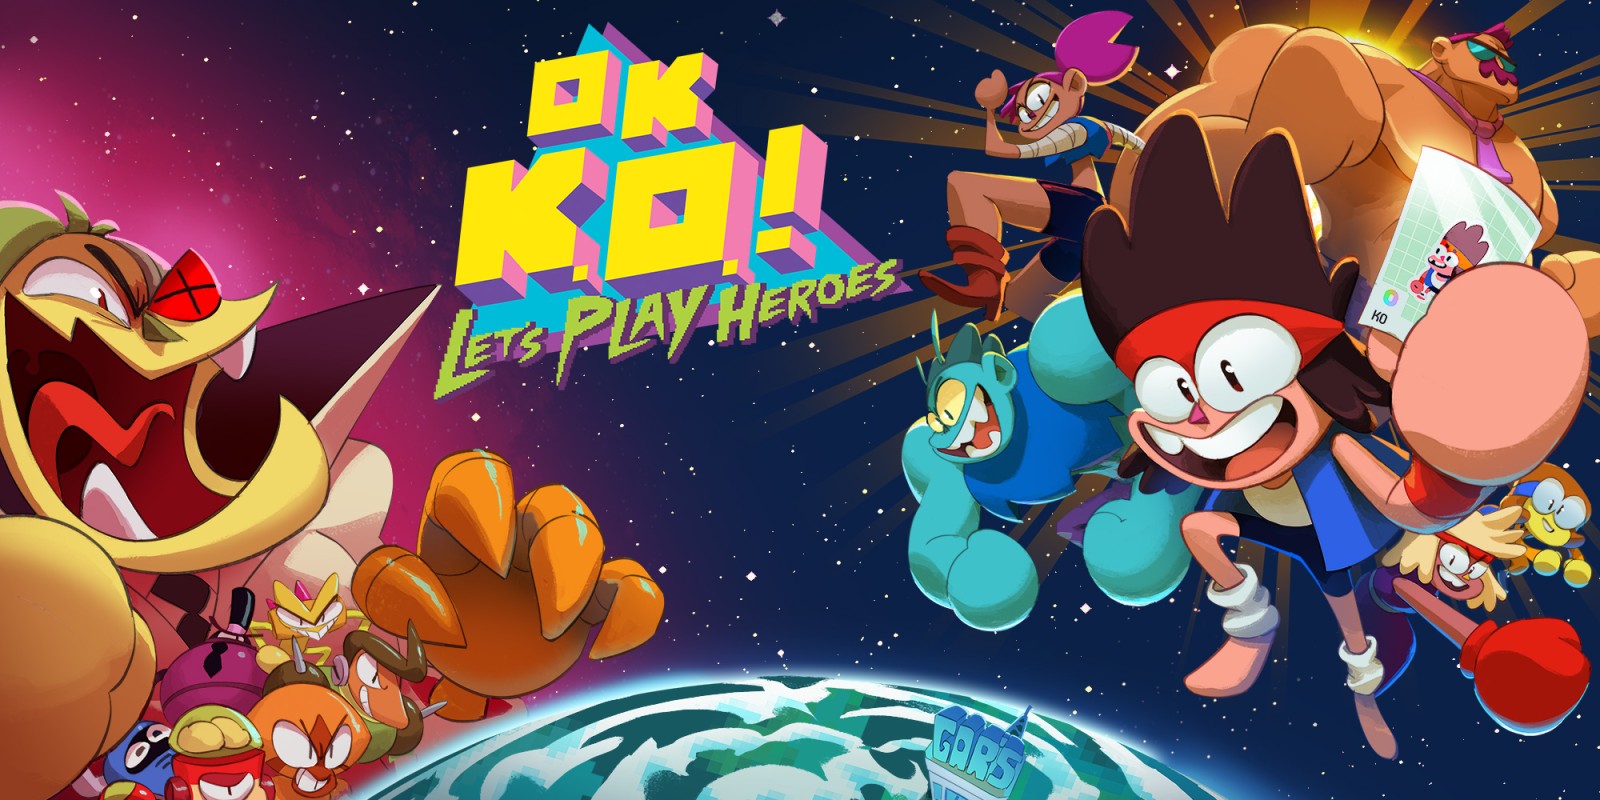 OK K.O.! Let’s Play Heroes